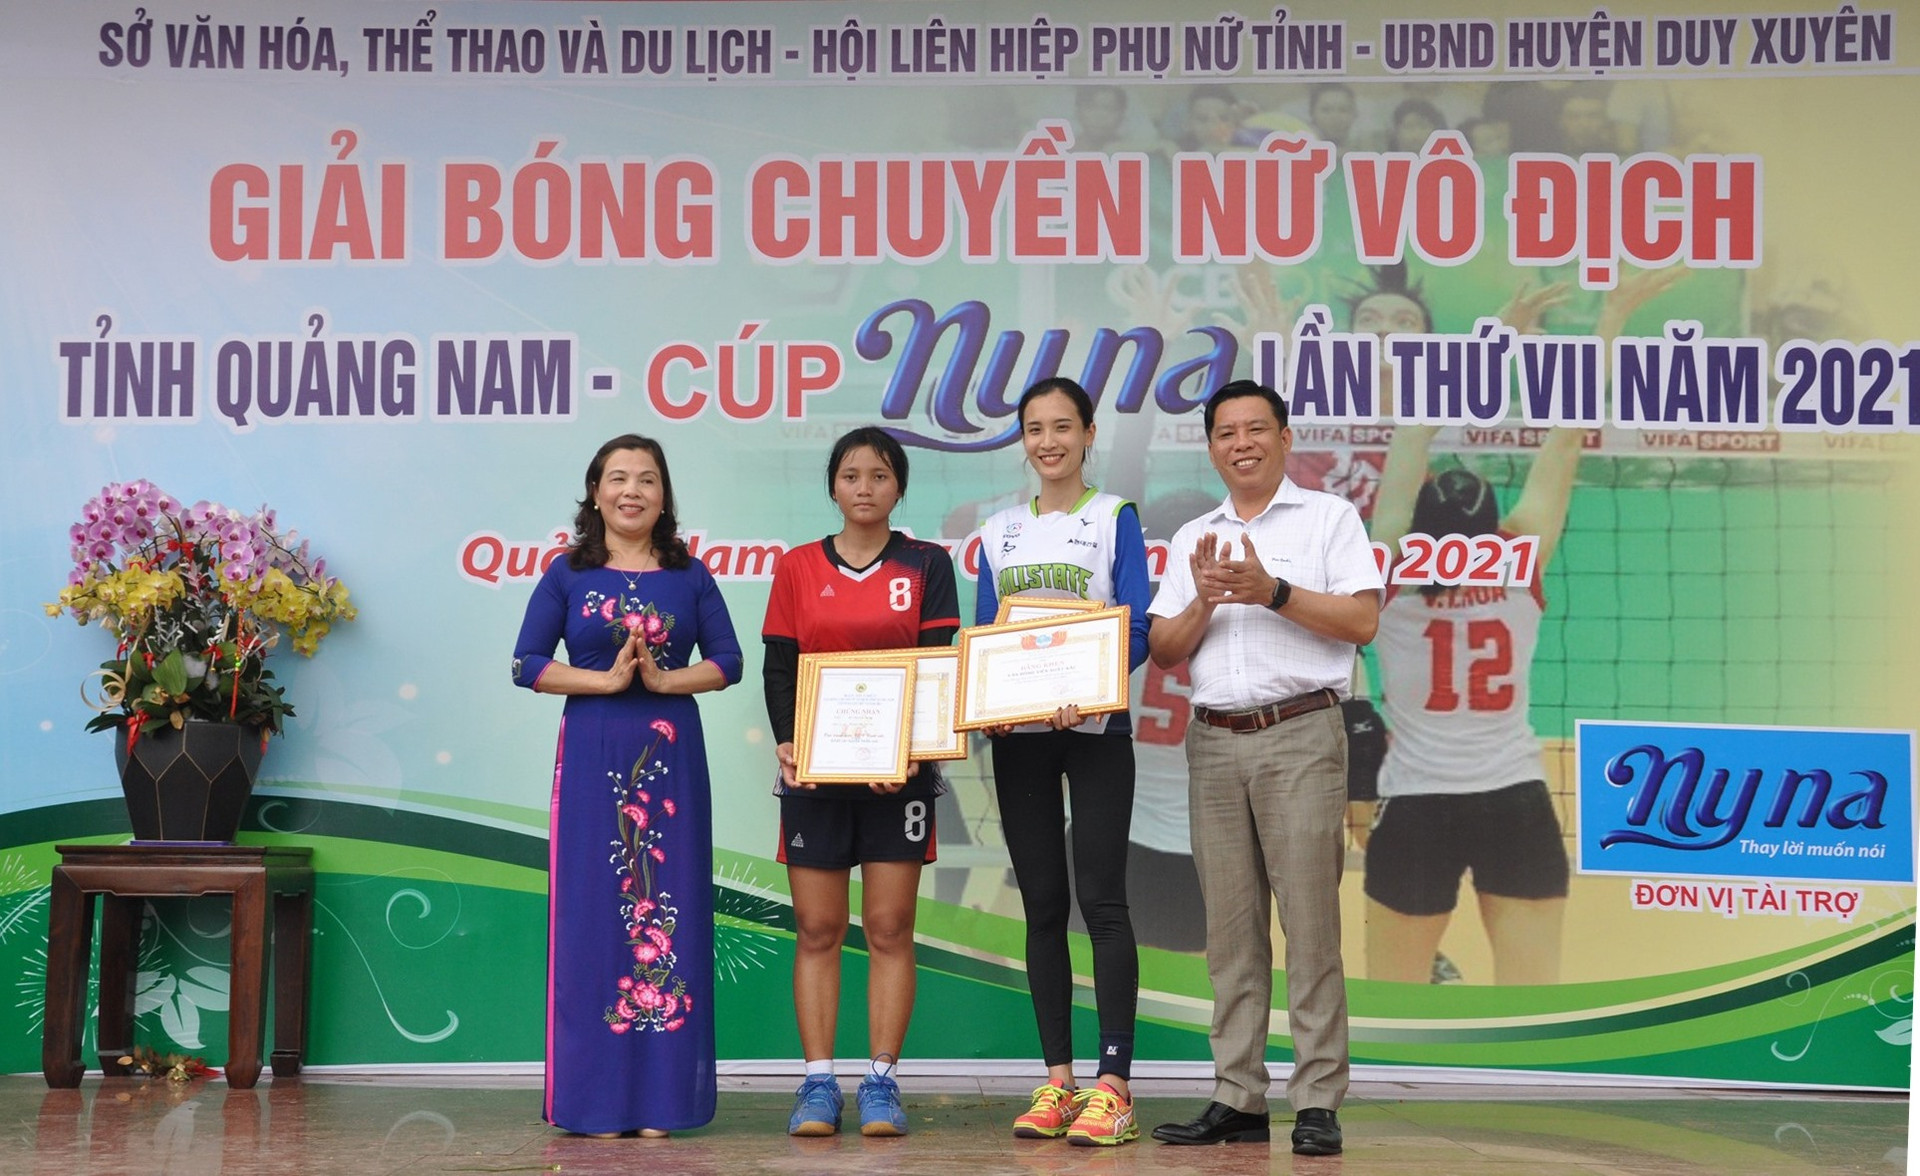 Từ Thị Thu Vân (Tam Kỳ) và Hồ Thị Kim Dung (Bắc Trà My) nhận giải vận động viên xuất sắc nhất. Ảnh: T.V